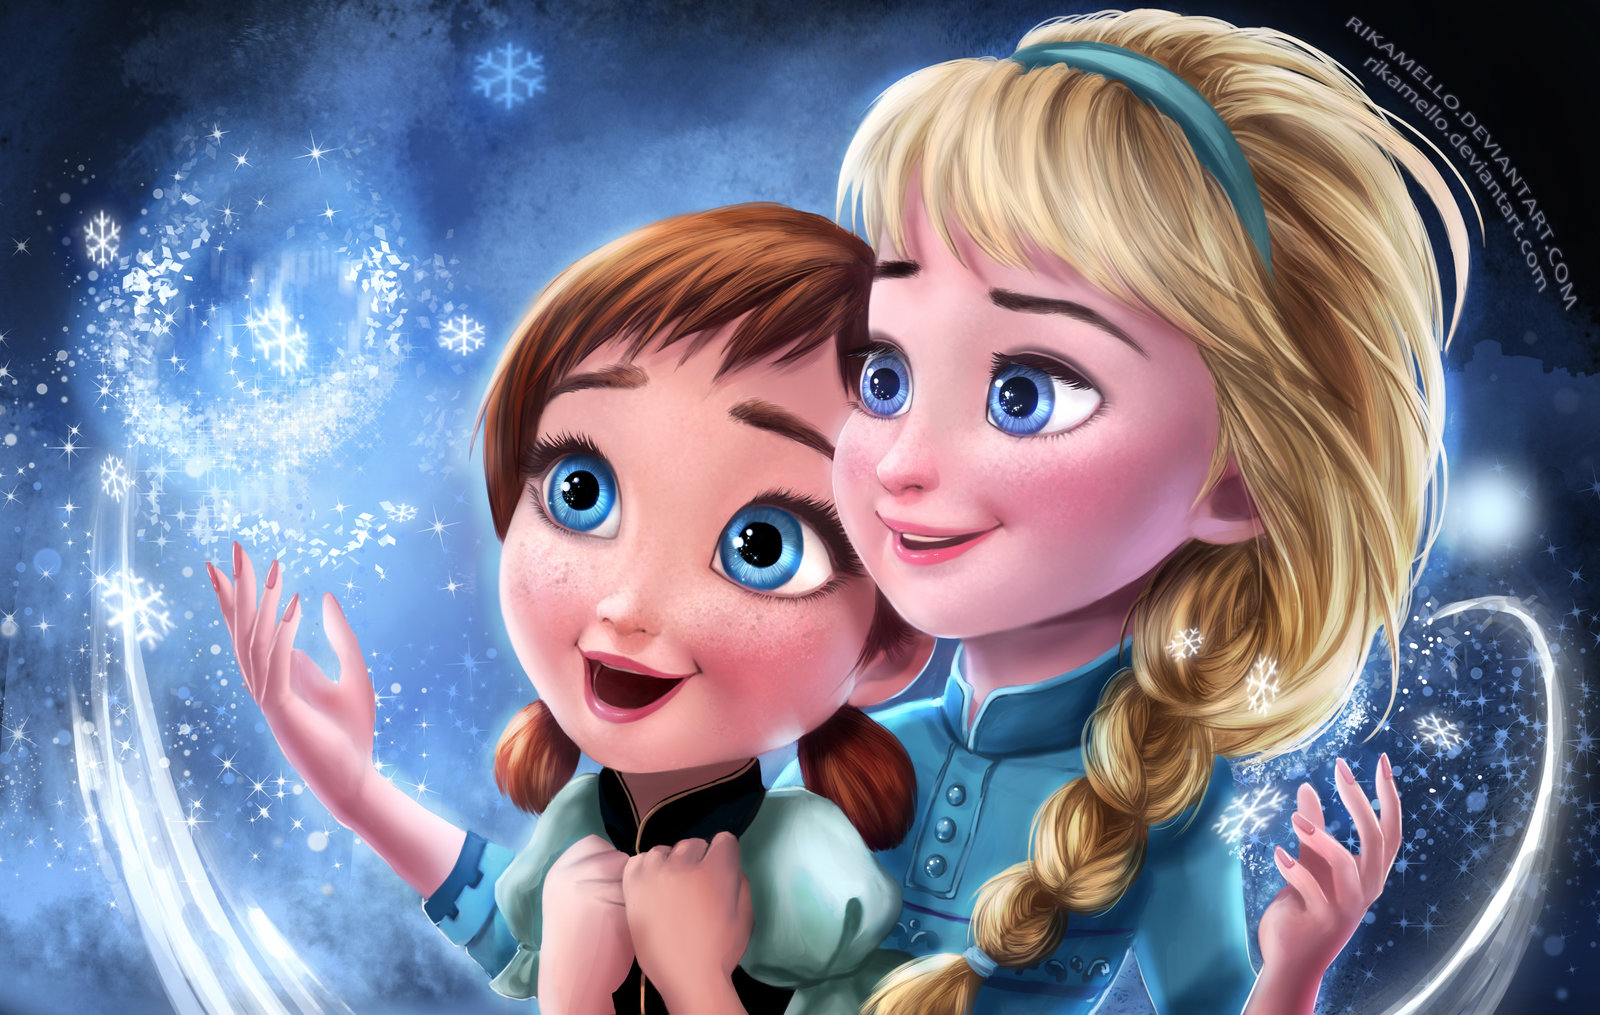 Free download Frozen Elsa Anna Digital Fan Art Wallpapers ...